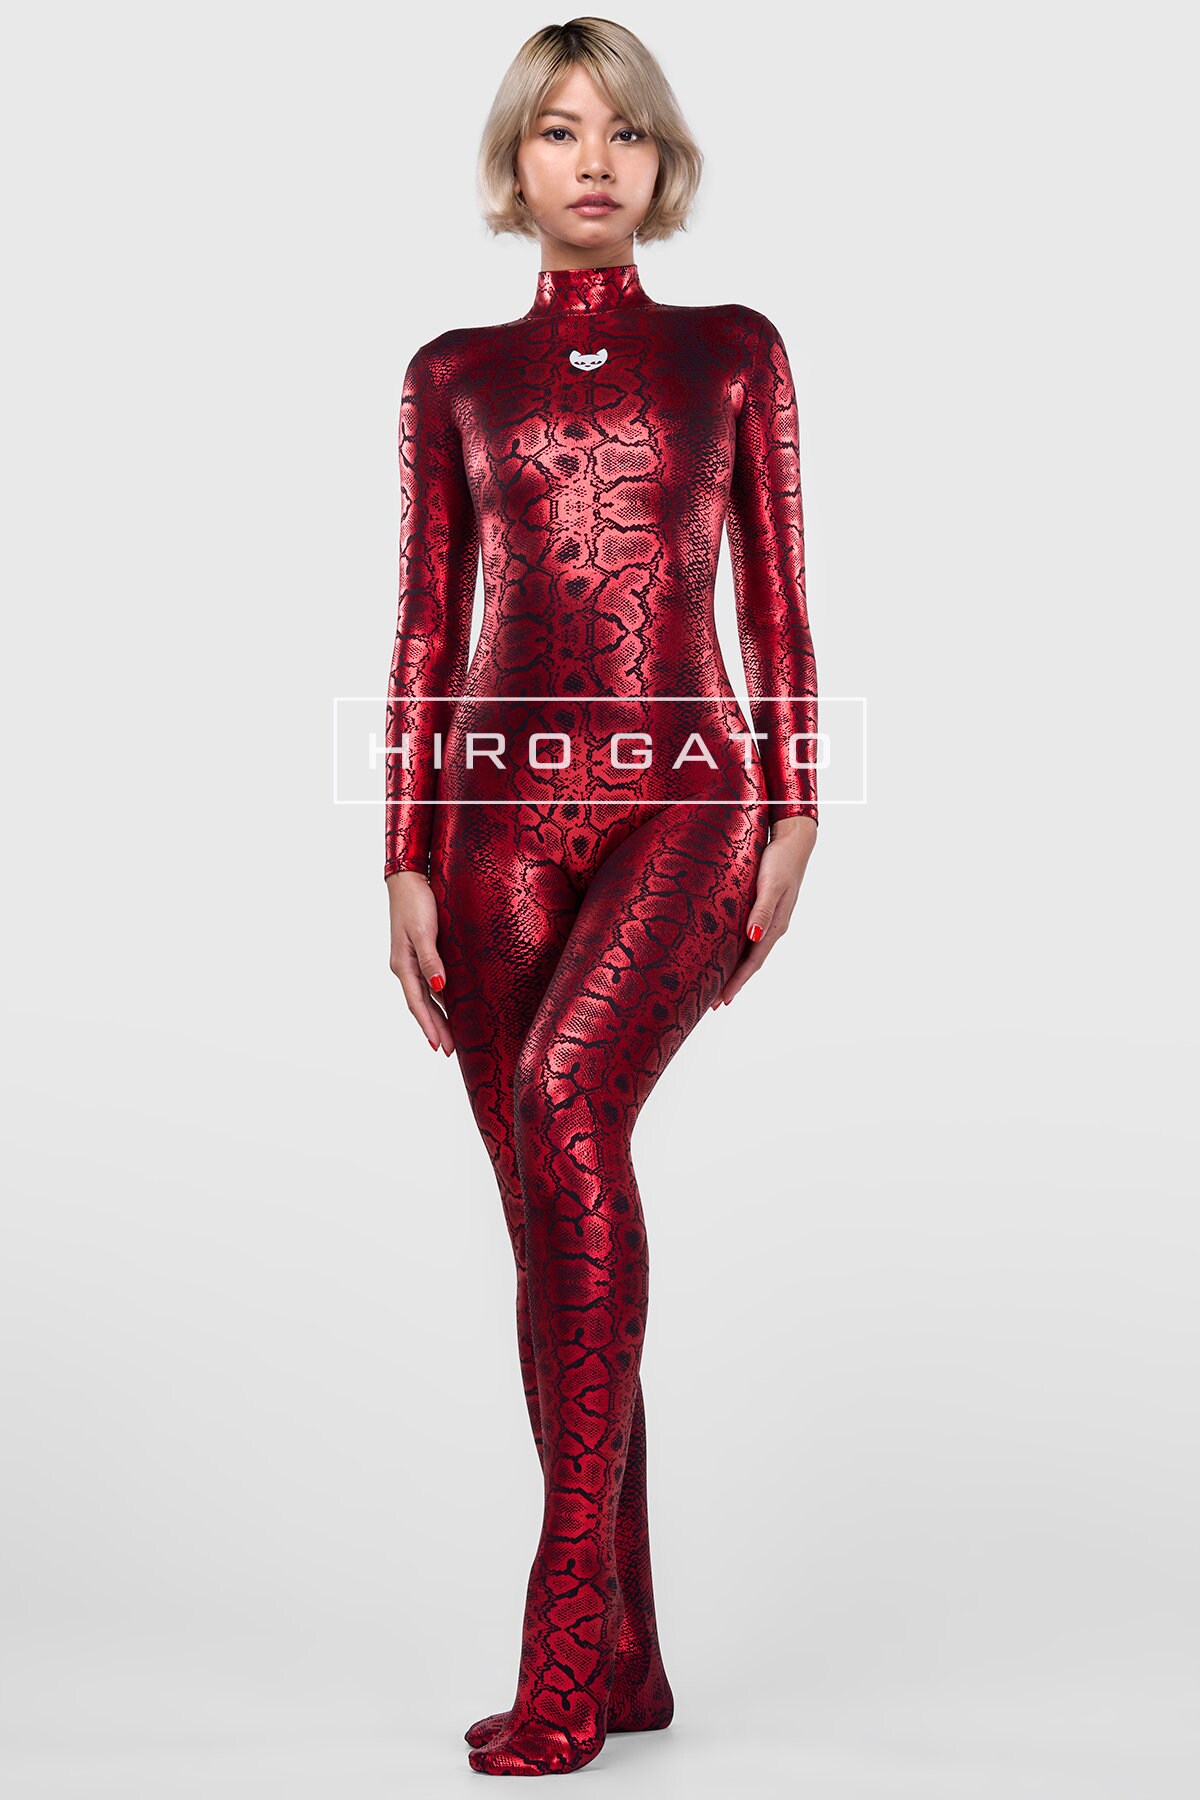 HIRO GATO Snakeskin Catsuit Black Red Shiny Metallic Lycra - Etsy